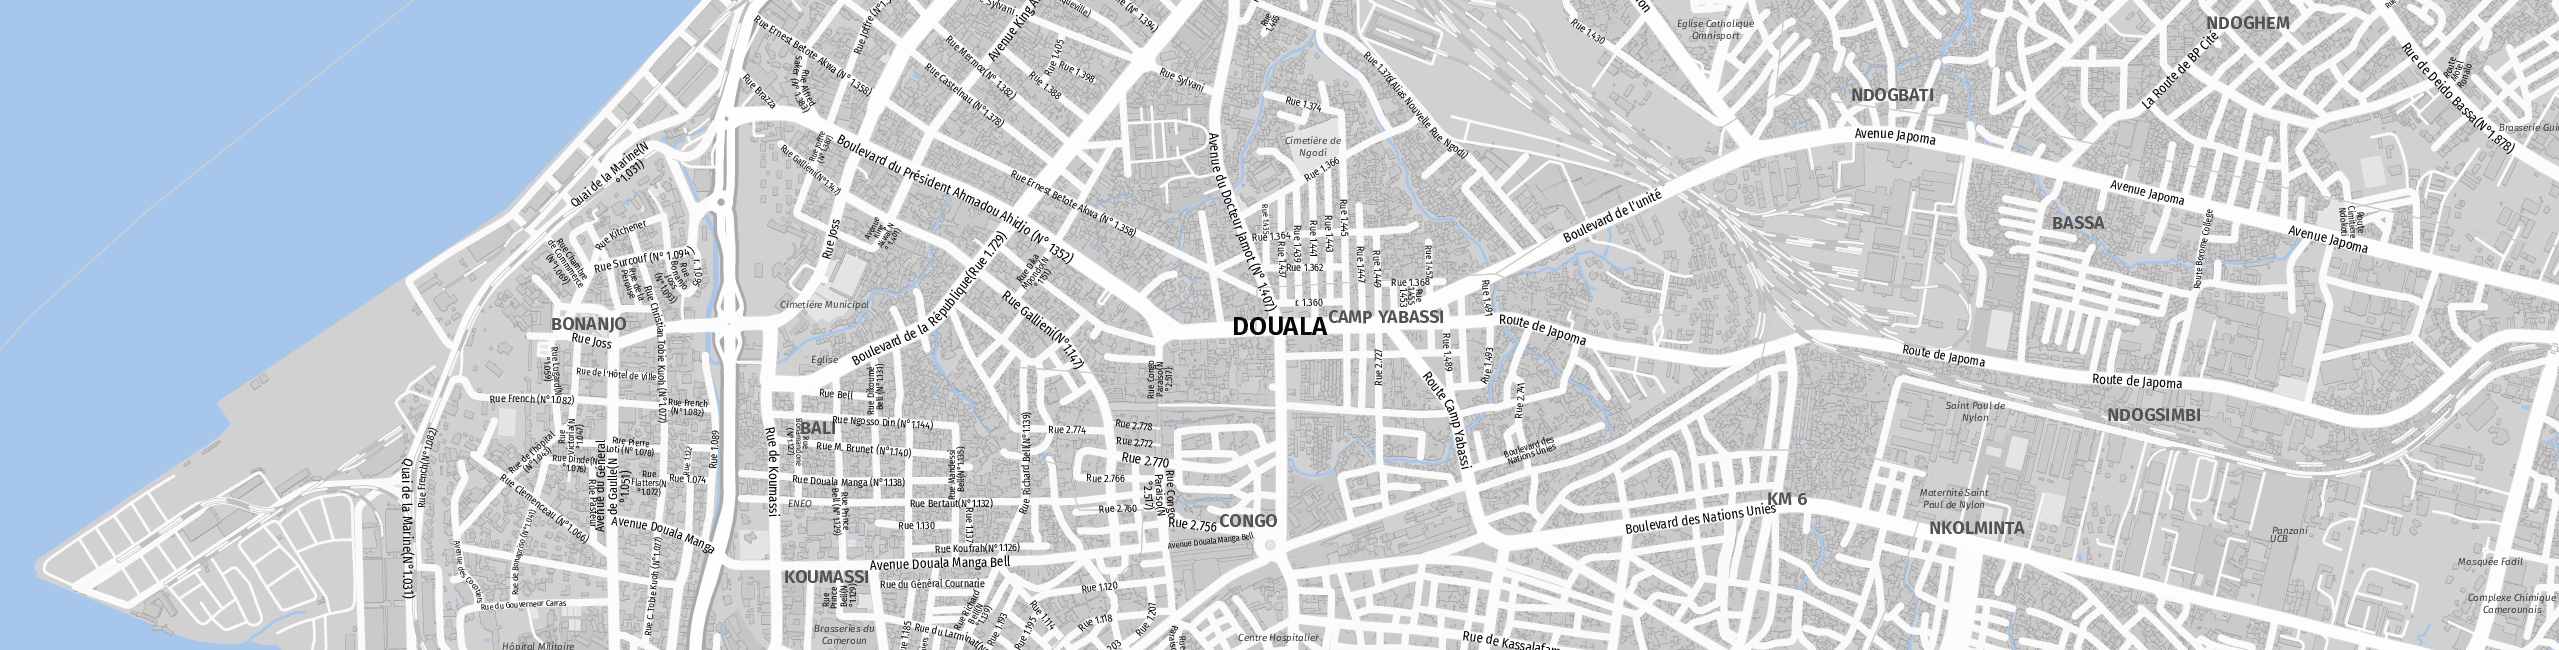 Stadtplan Duala zum Downloaden.